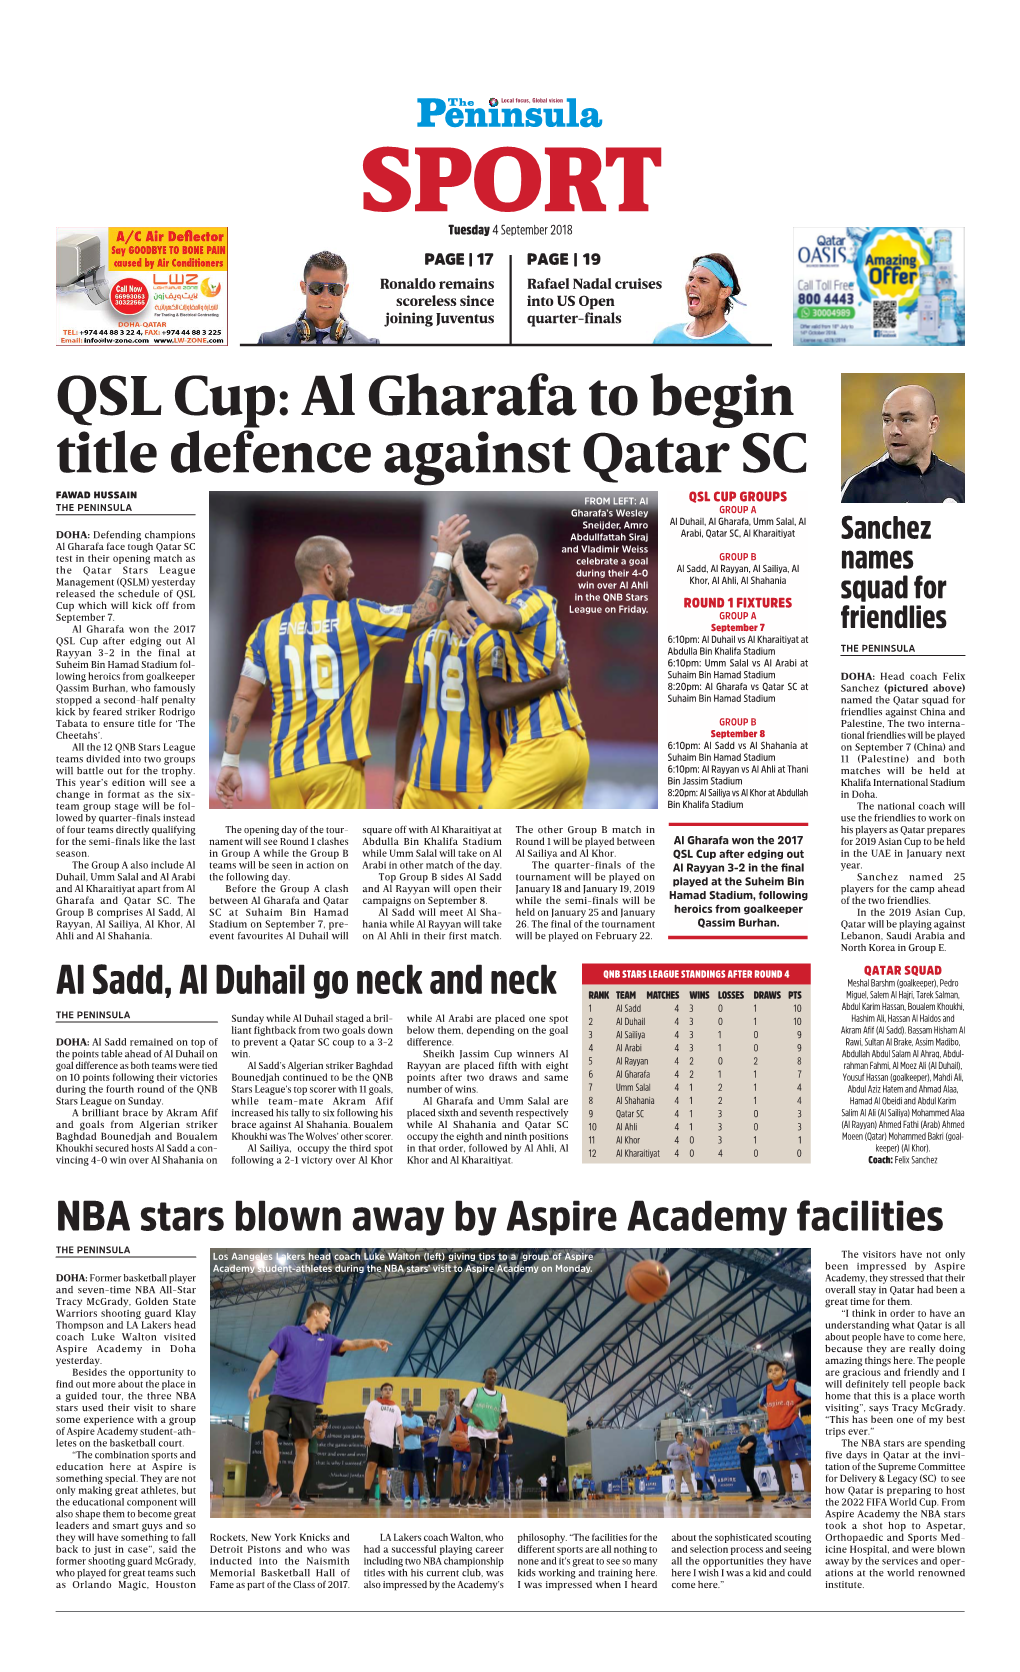 Al Gharafa to Begin Title Defence Against Qatar